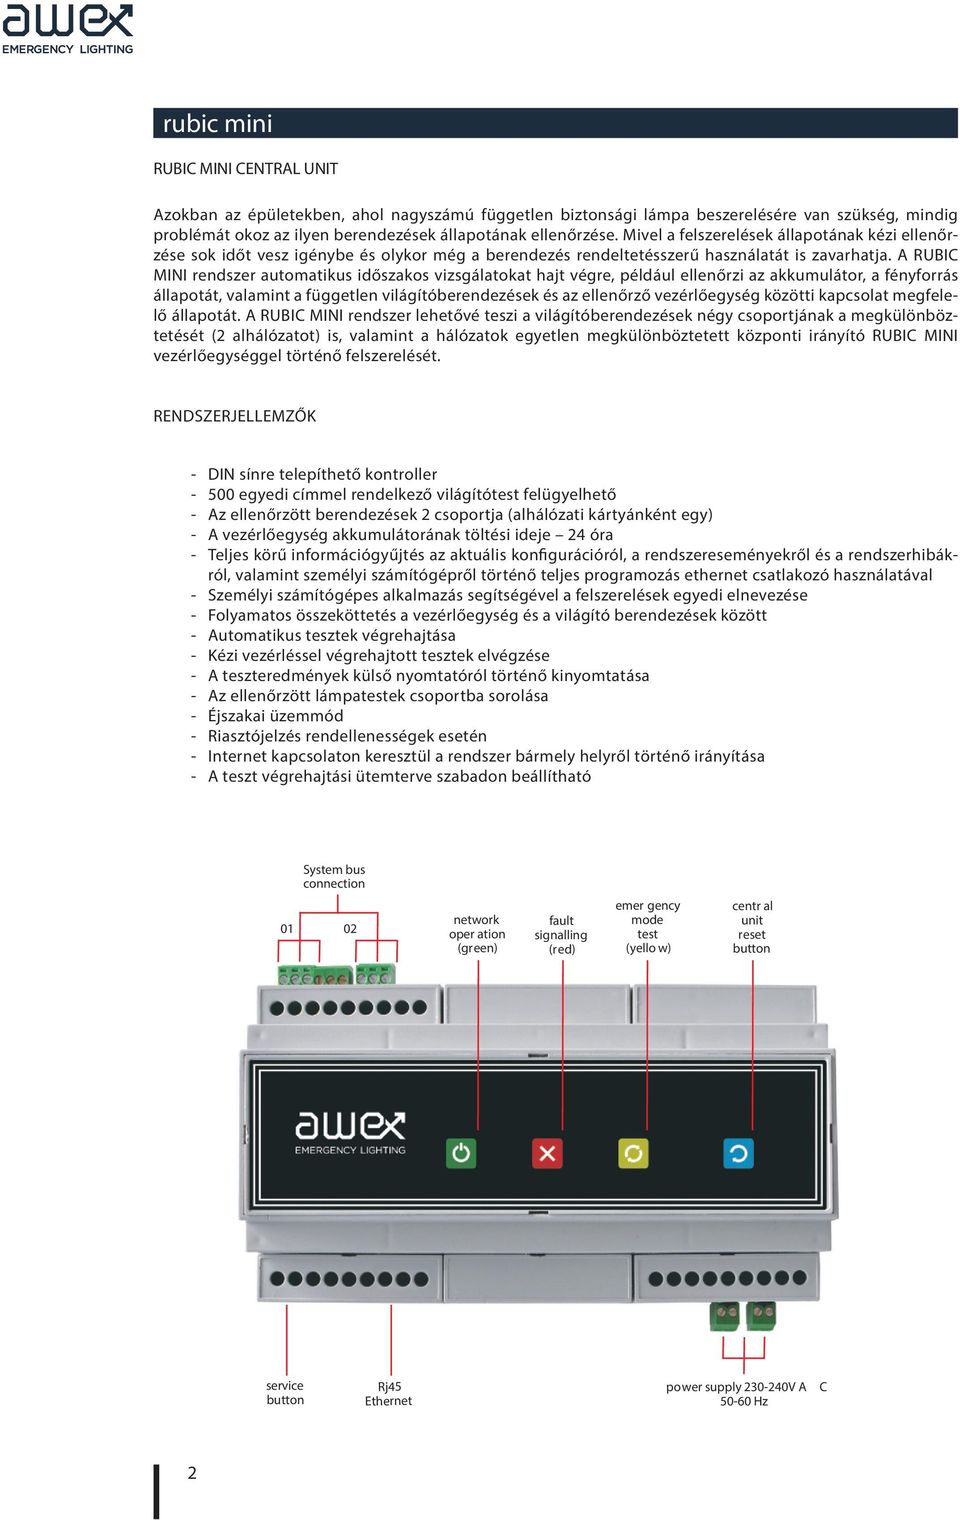 A RUBIC MINI rendszer automatikus időszakos vizsgálatokat hajt végre, például ellenőrzi az akkumulátor, a fényforrás állapotát, valamint a független világítóberendezések és az ellenőrző vezérlőegység